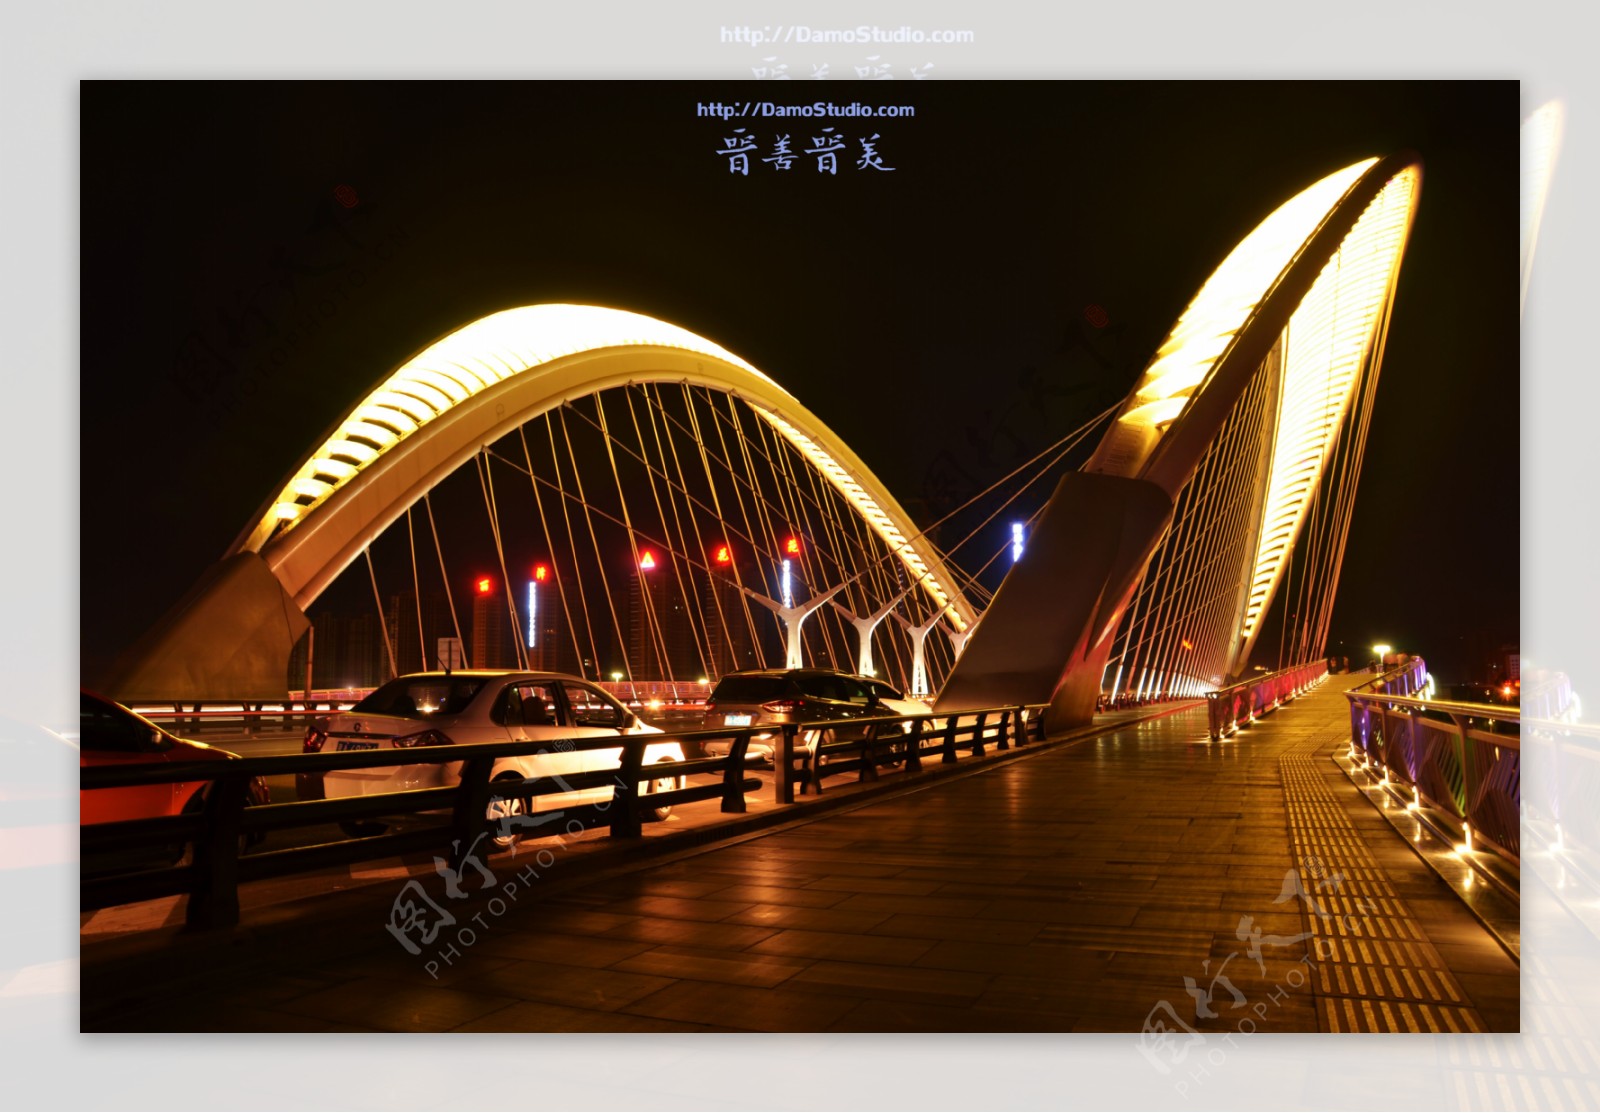 太原南中环桥图片